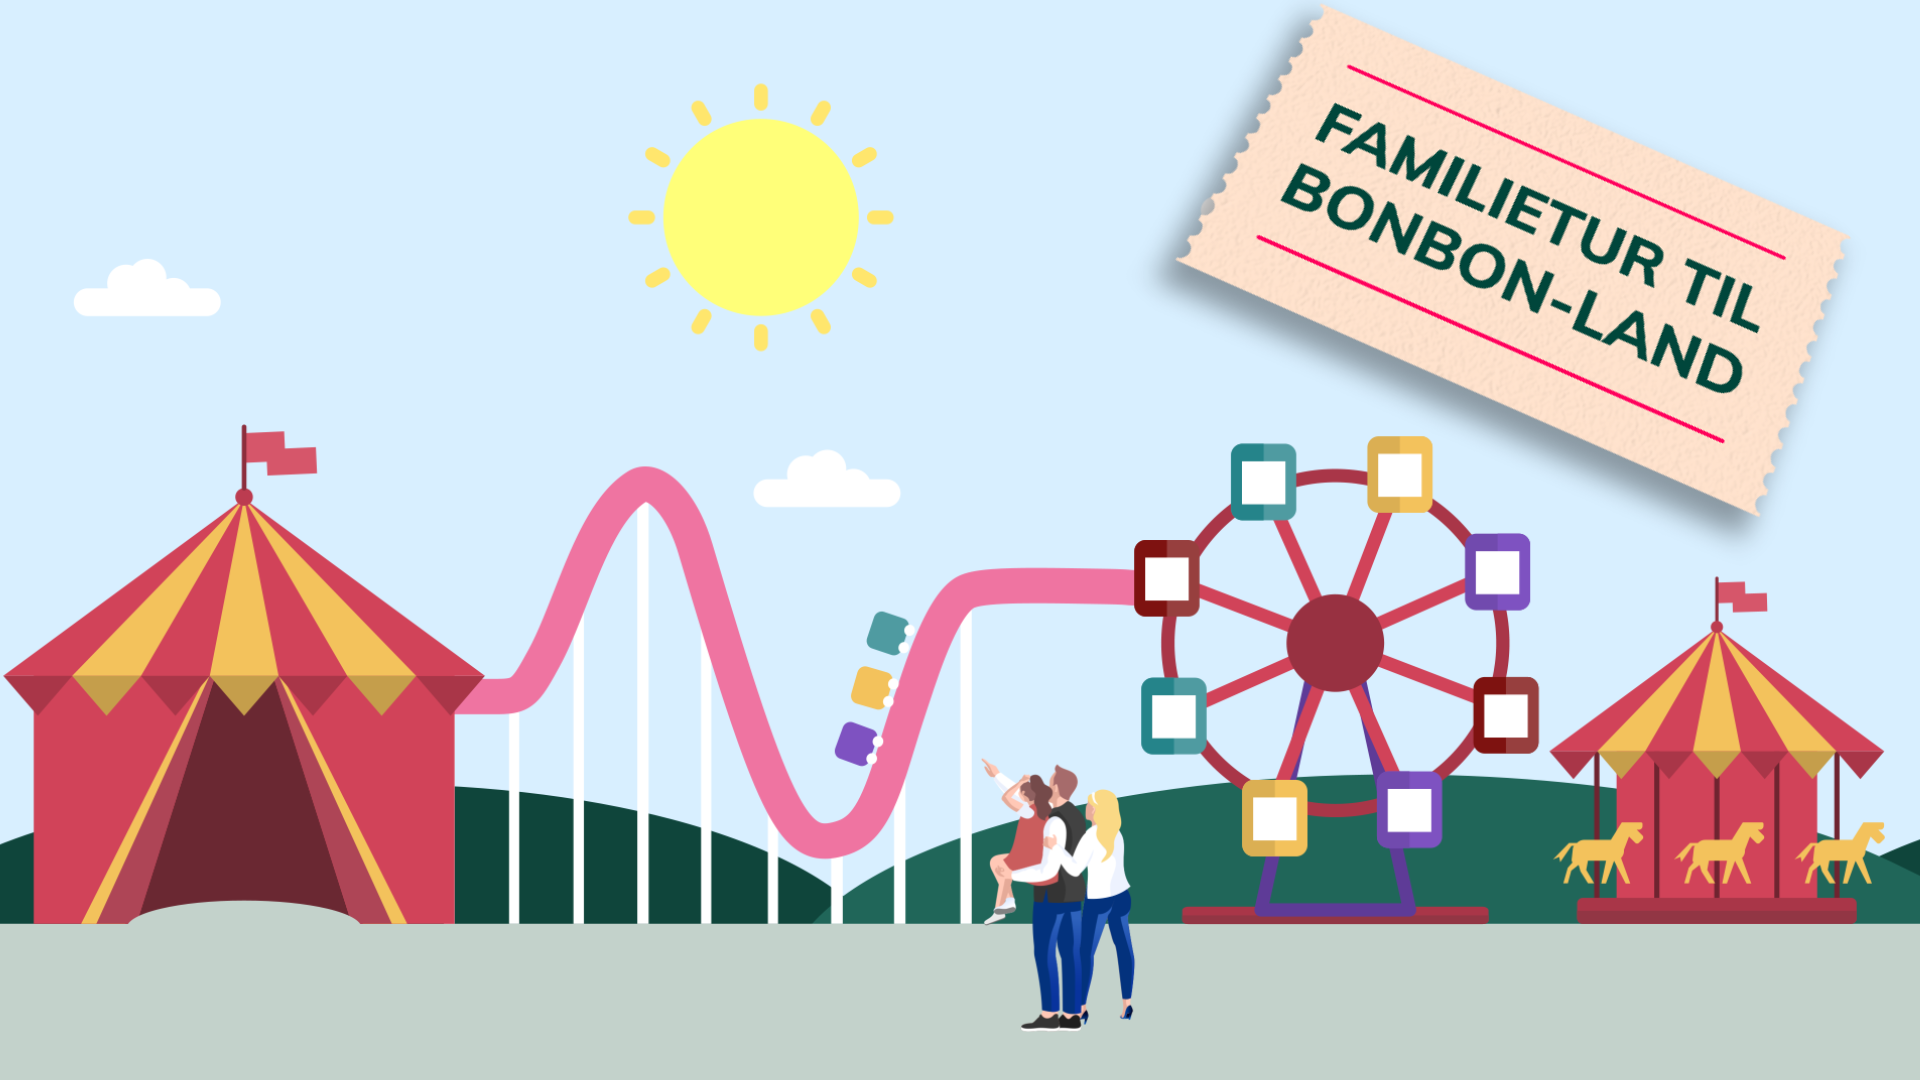 BonBon-Land-Velkommen-kampagne